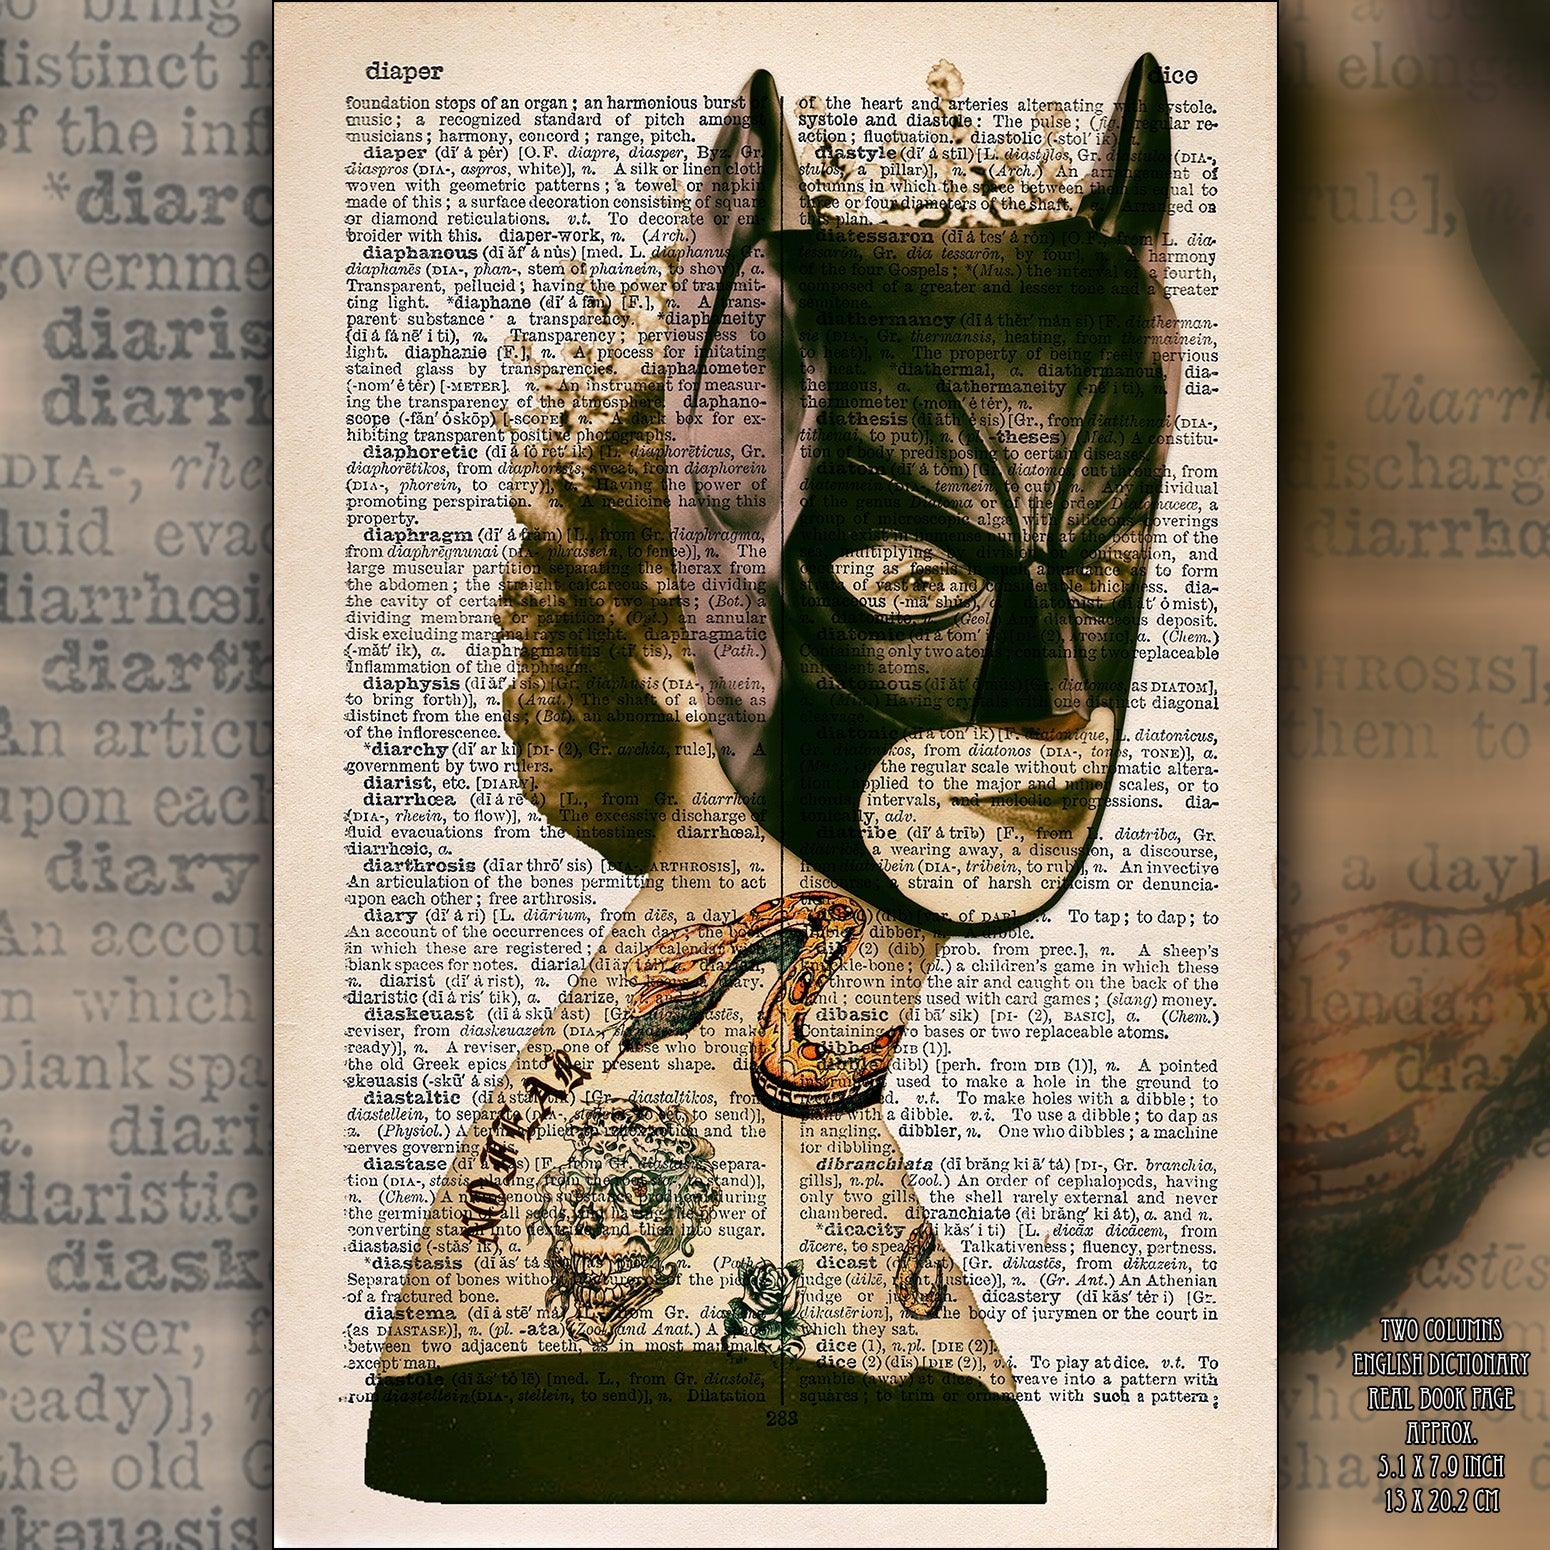 Queen Elizabeth II Batman Mask Art Poster on Vintage Dictionary Page - ArtCursor